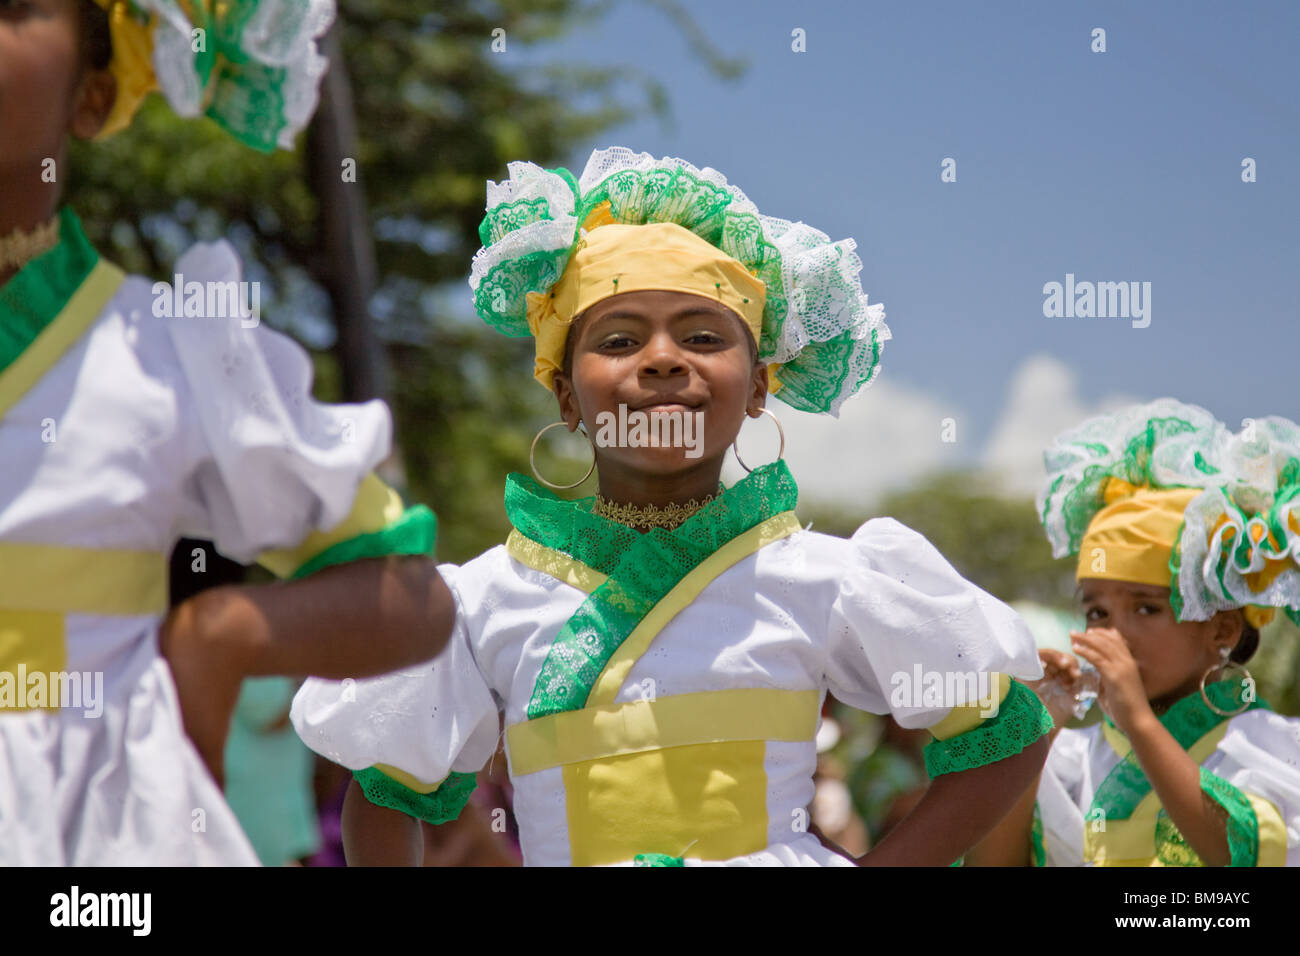 Jeune fille vêtue de costumes colorés au cours de danse Fête des récoltes, Willemstad, Curaçao, Antilles néerlandaises, des Caraïbes. Banque D'Images